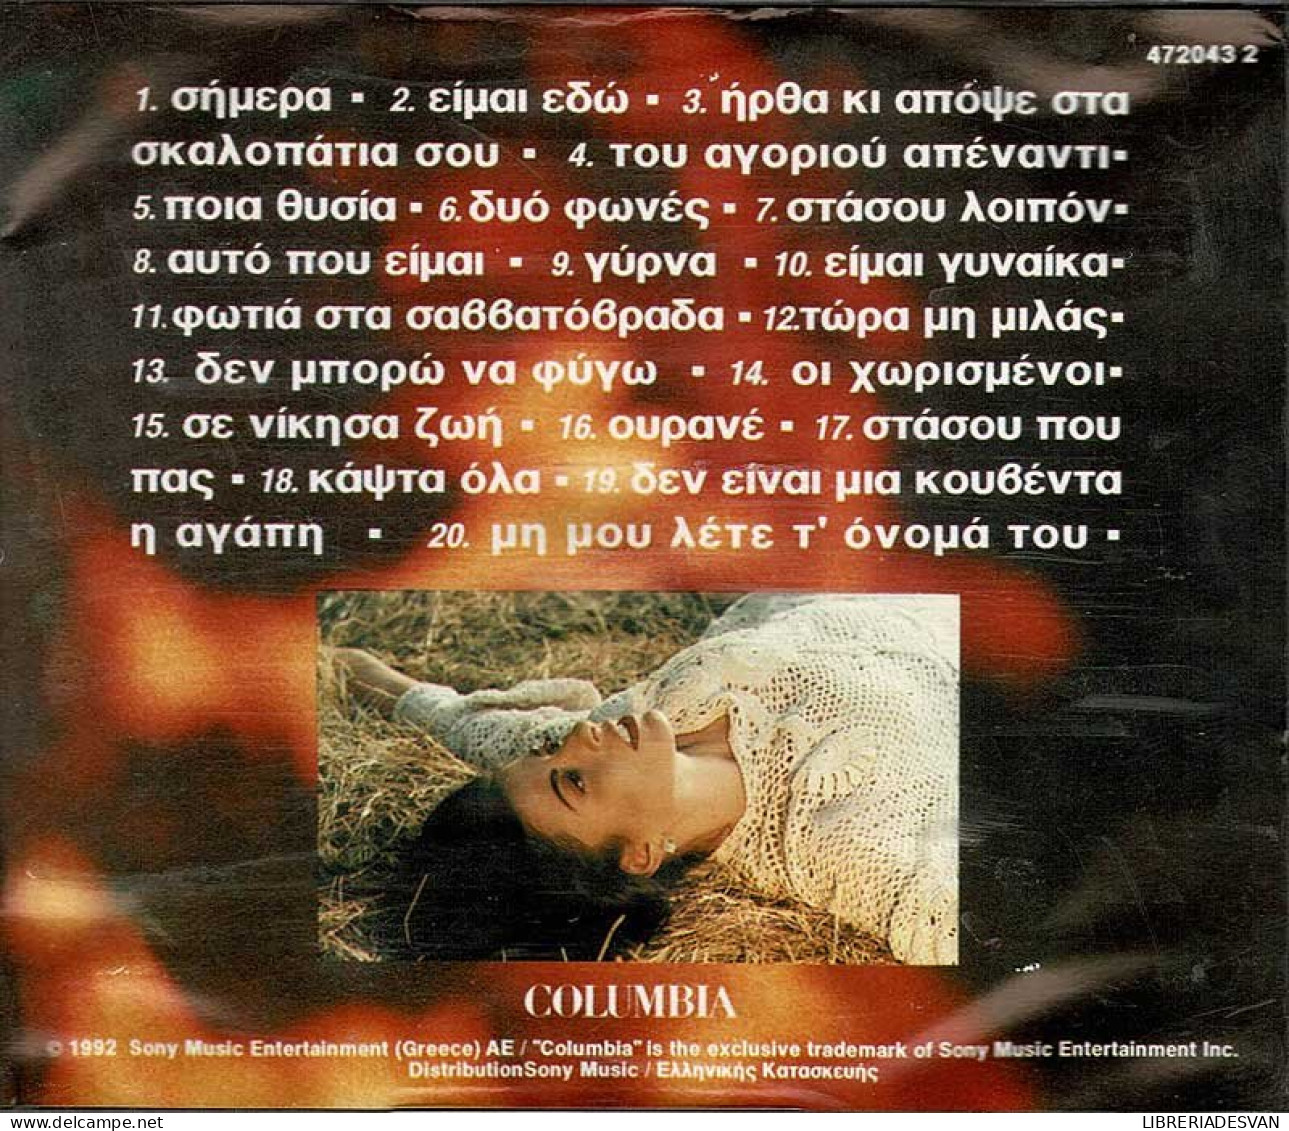 Angela Dimitriou - Fotia Sta Savatovrada. CD - Country Et Folk